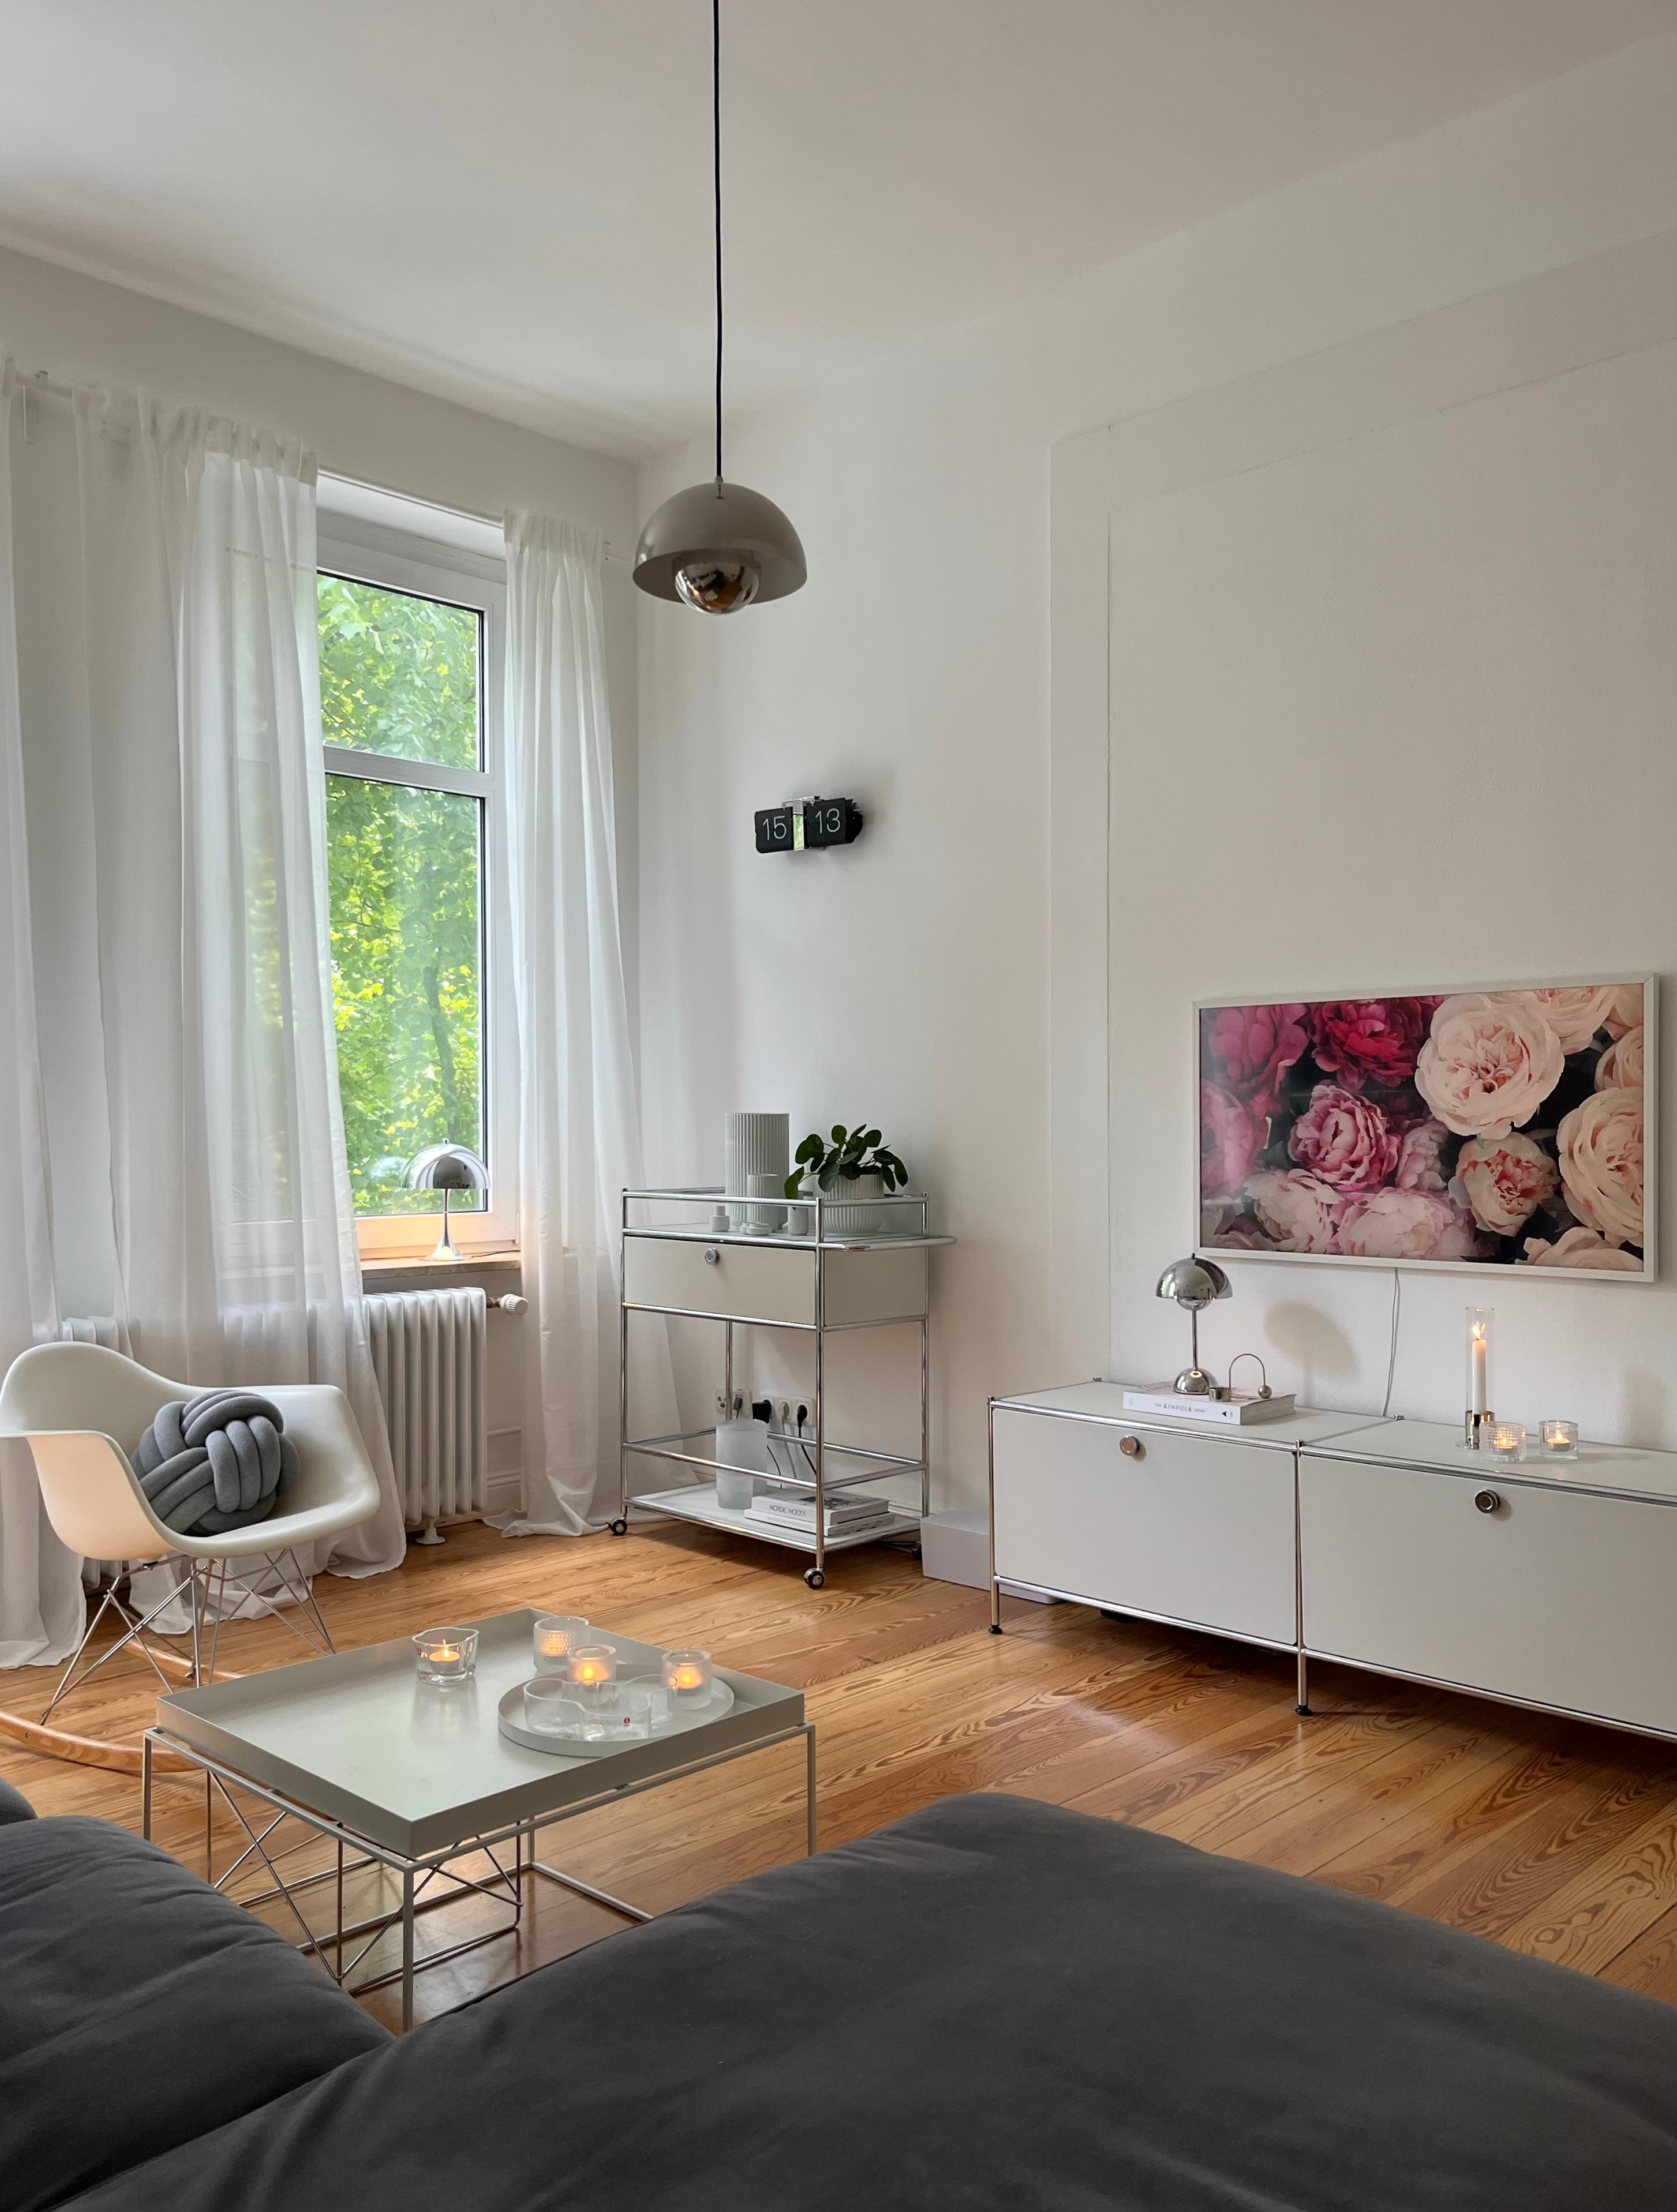 #wohnzimmer #altbauwohnung #skandinavischwohnen #danishdesign #leuchtenliebe 